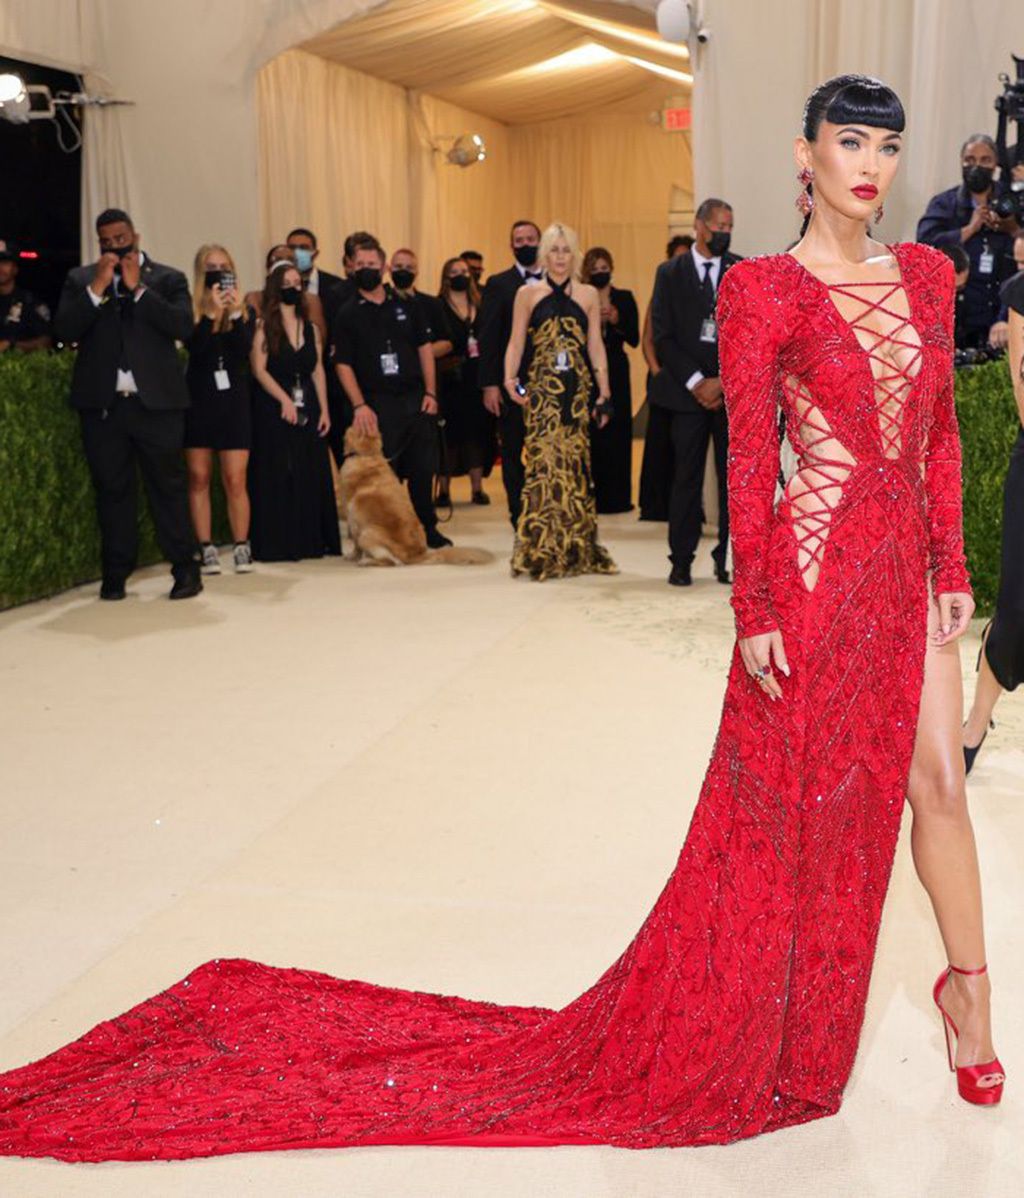 De Rosalía a Rihanna: la alfombra roja de la Gala MET 2021, foto a foto